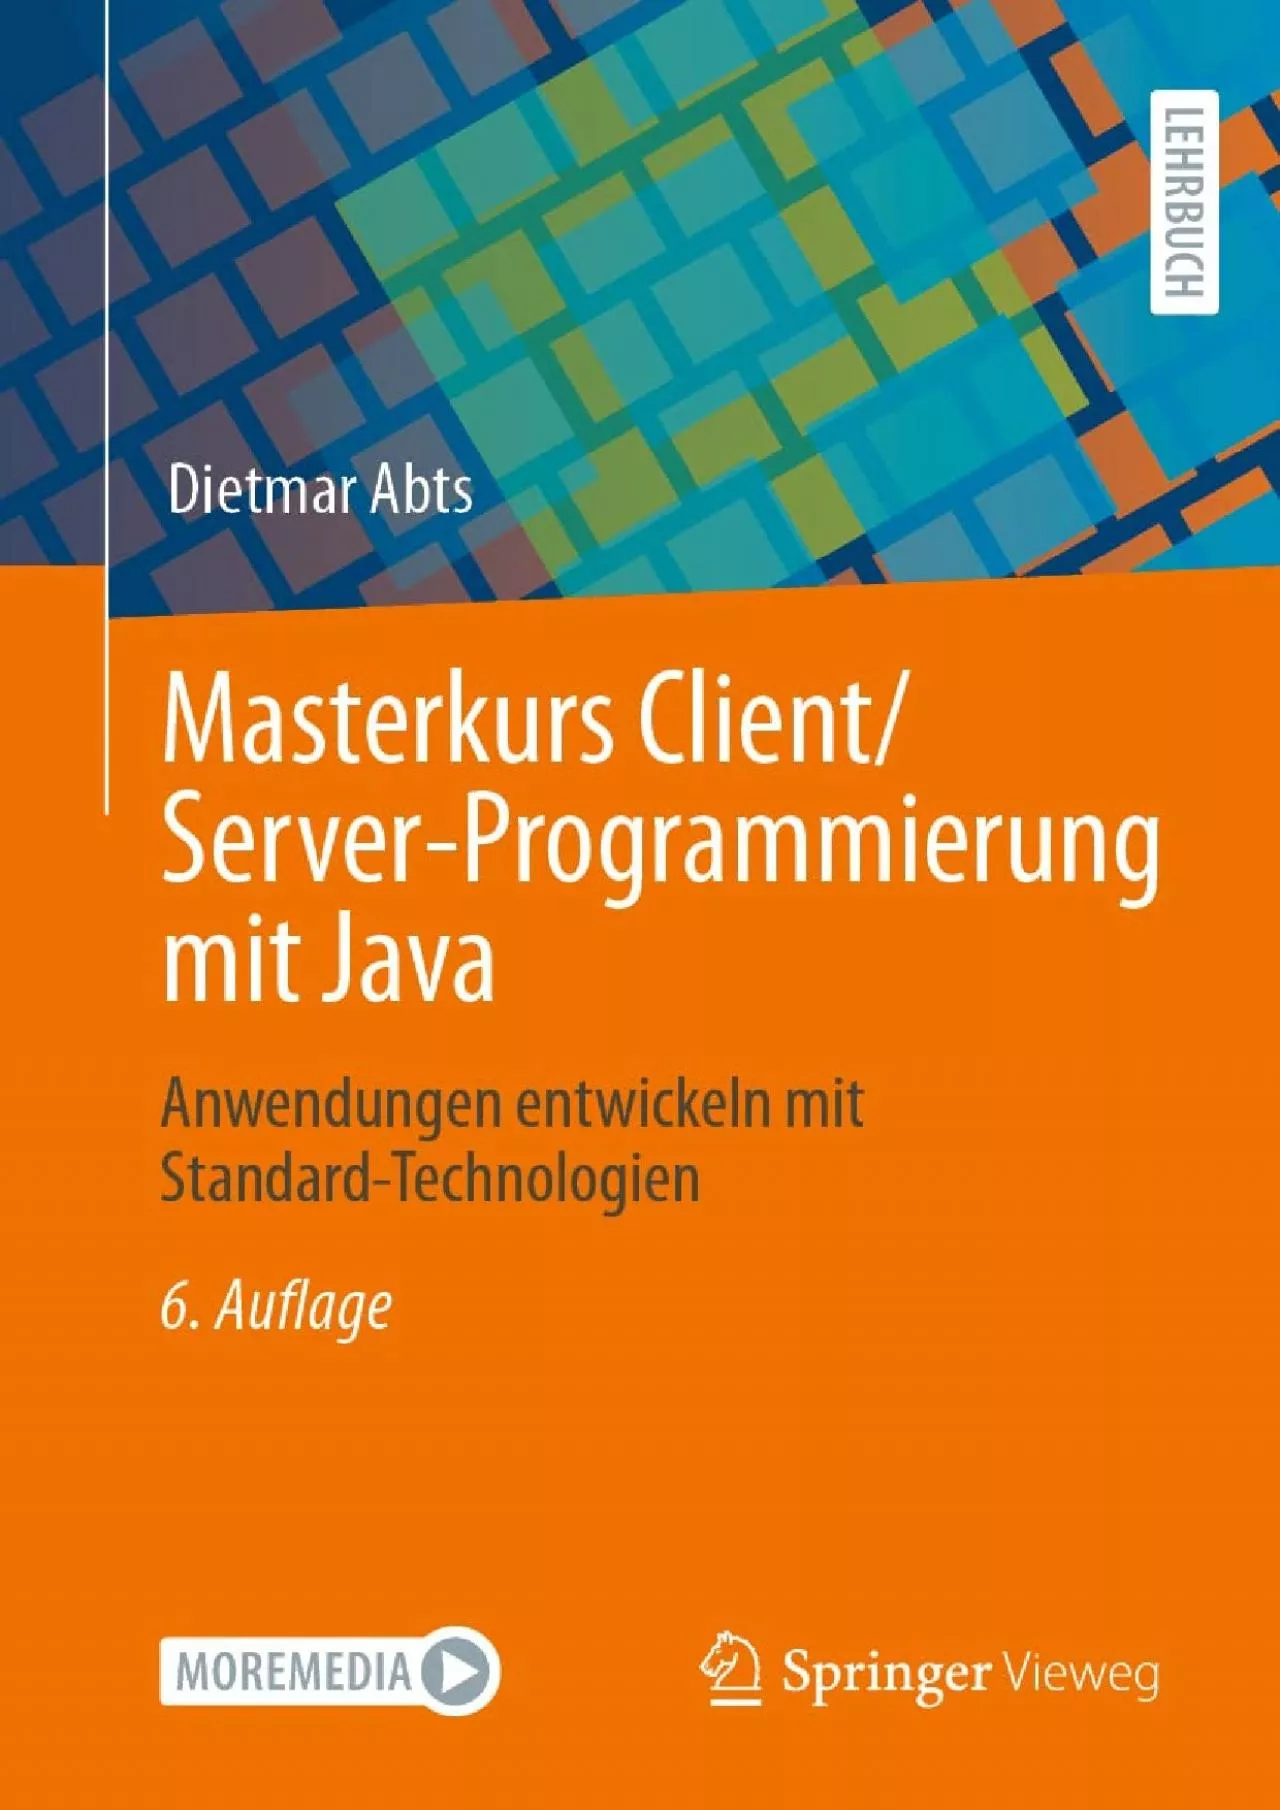 [BEST]-Masterkurs Client/Server-Programmierung mit Java: Anwendungen entwickeln mit Standard-Technologien